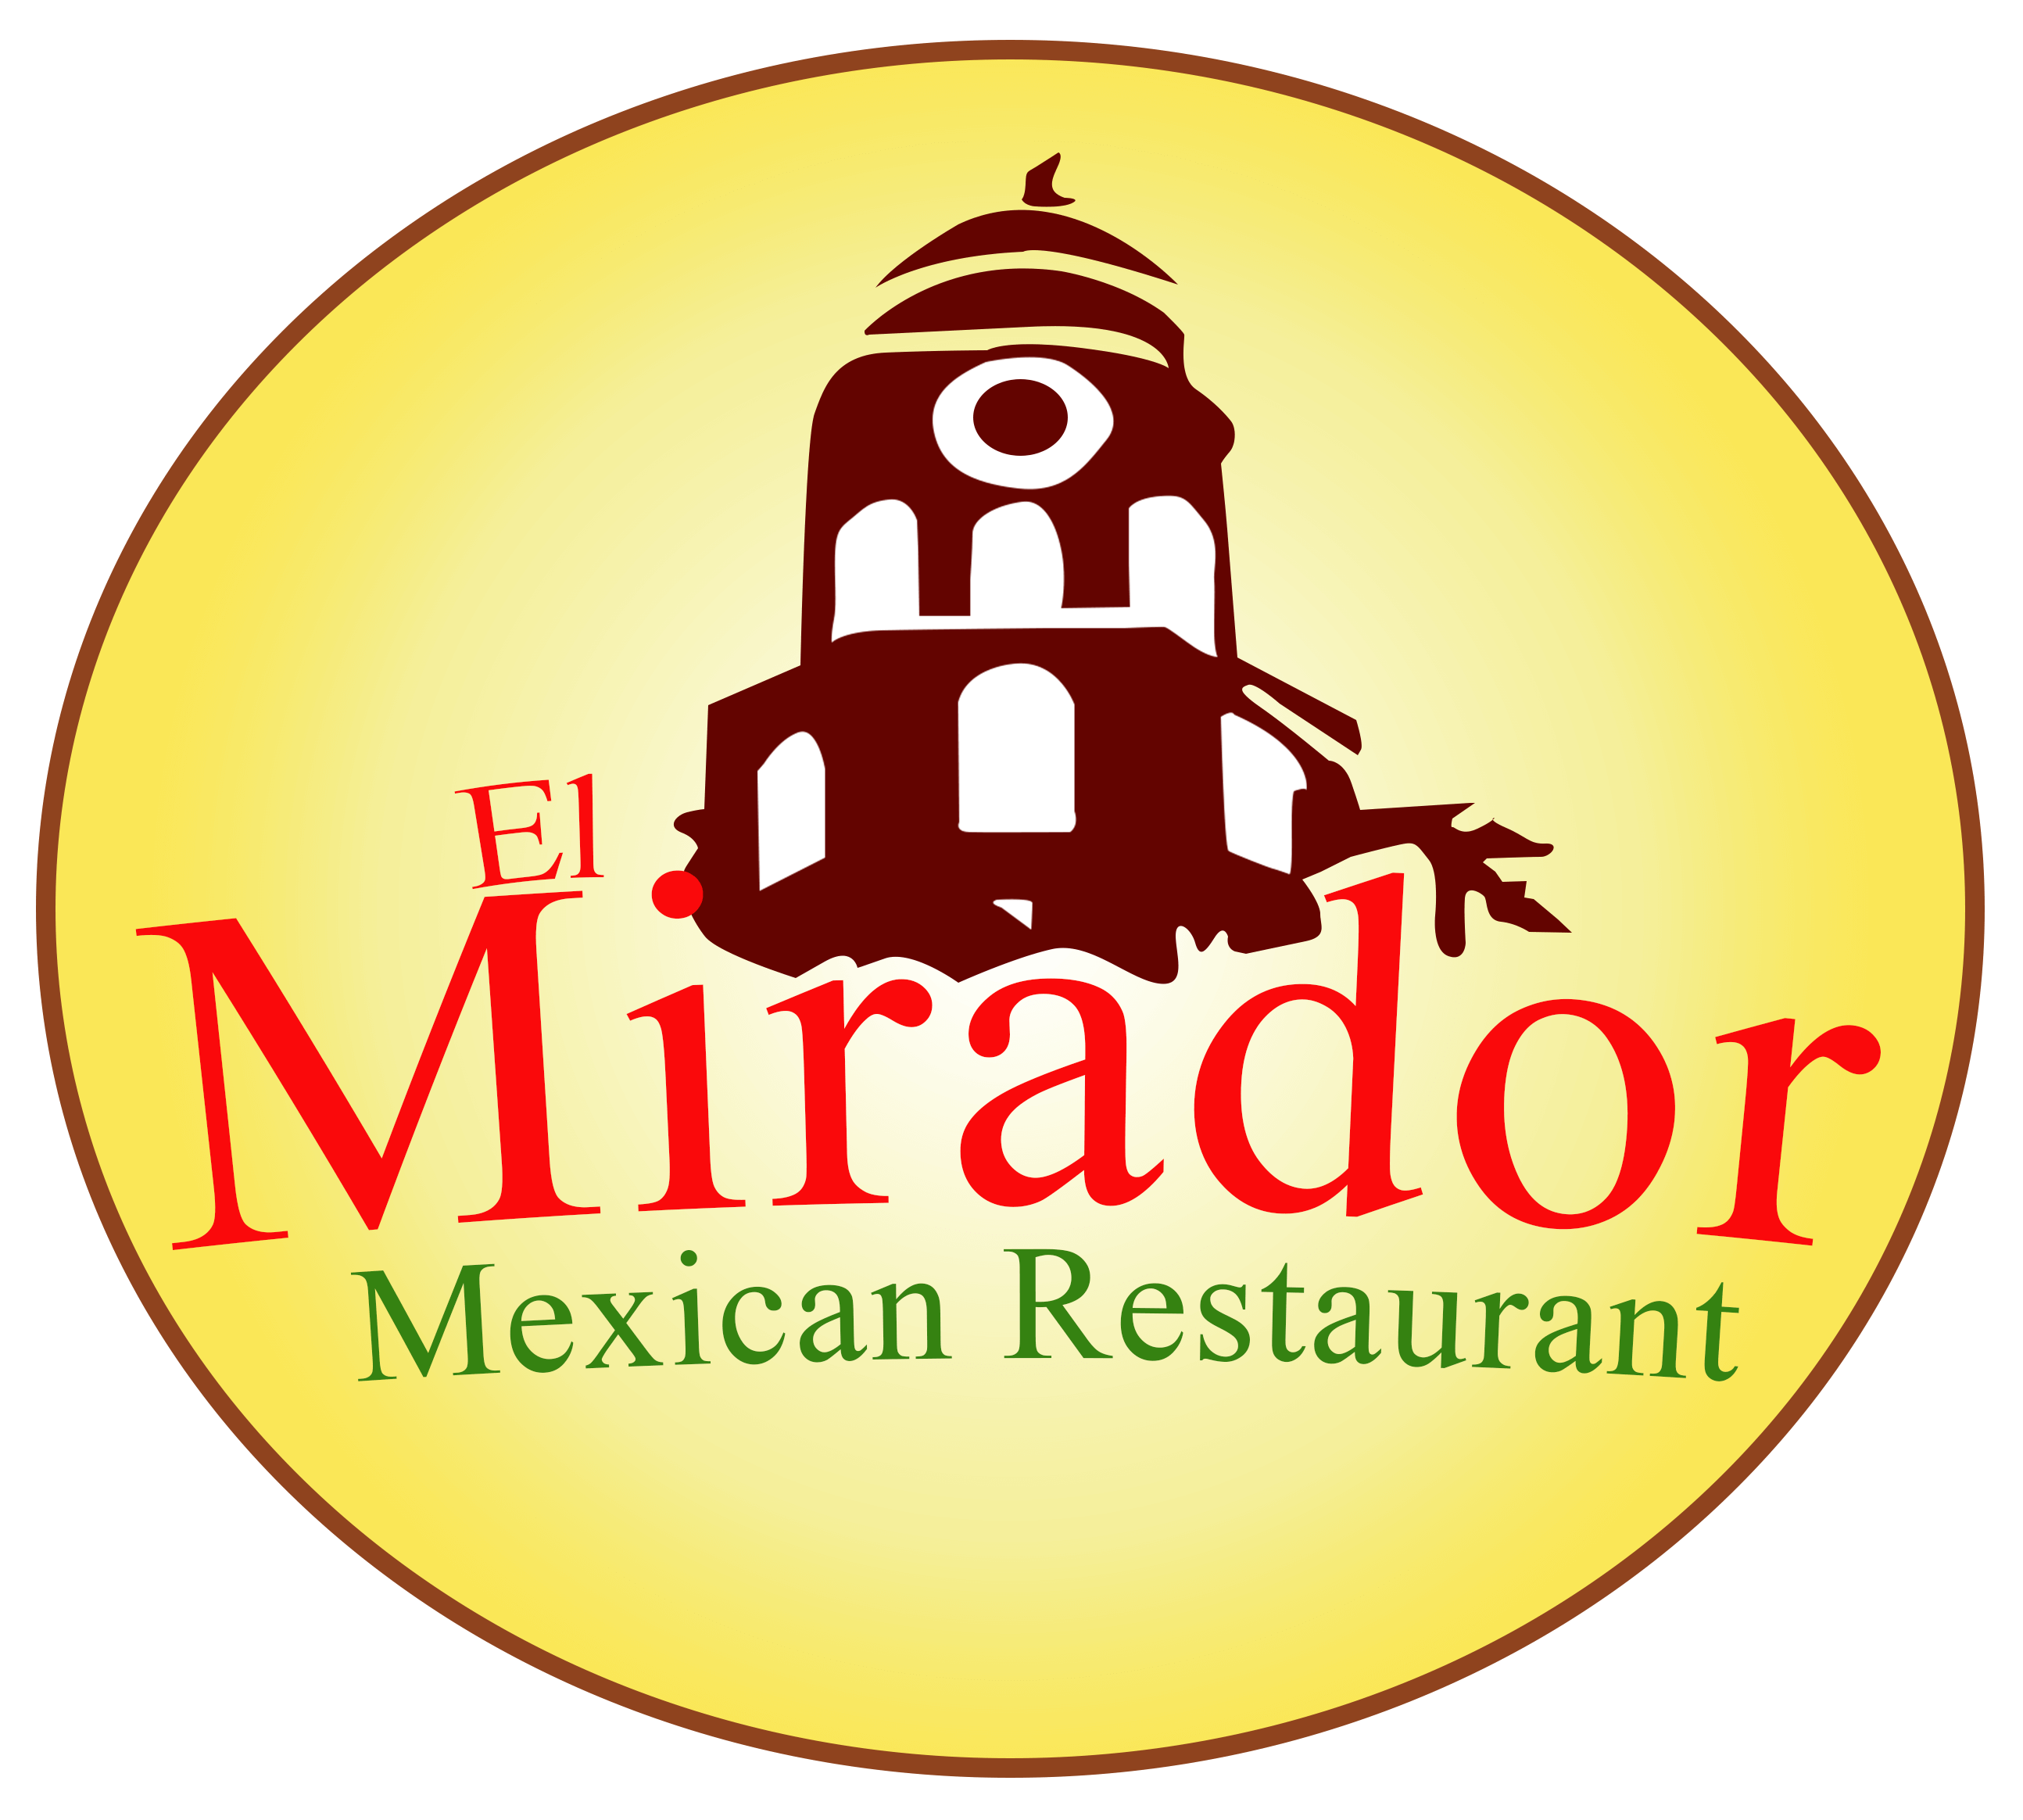 El Mirado Mexican Restaurant